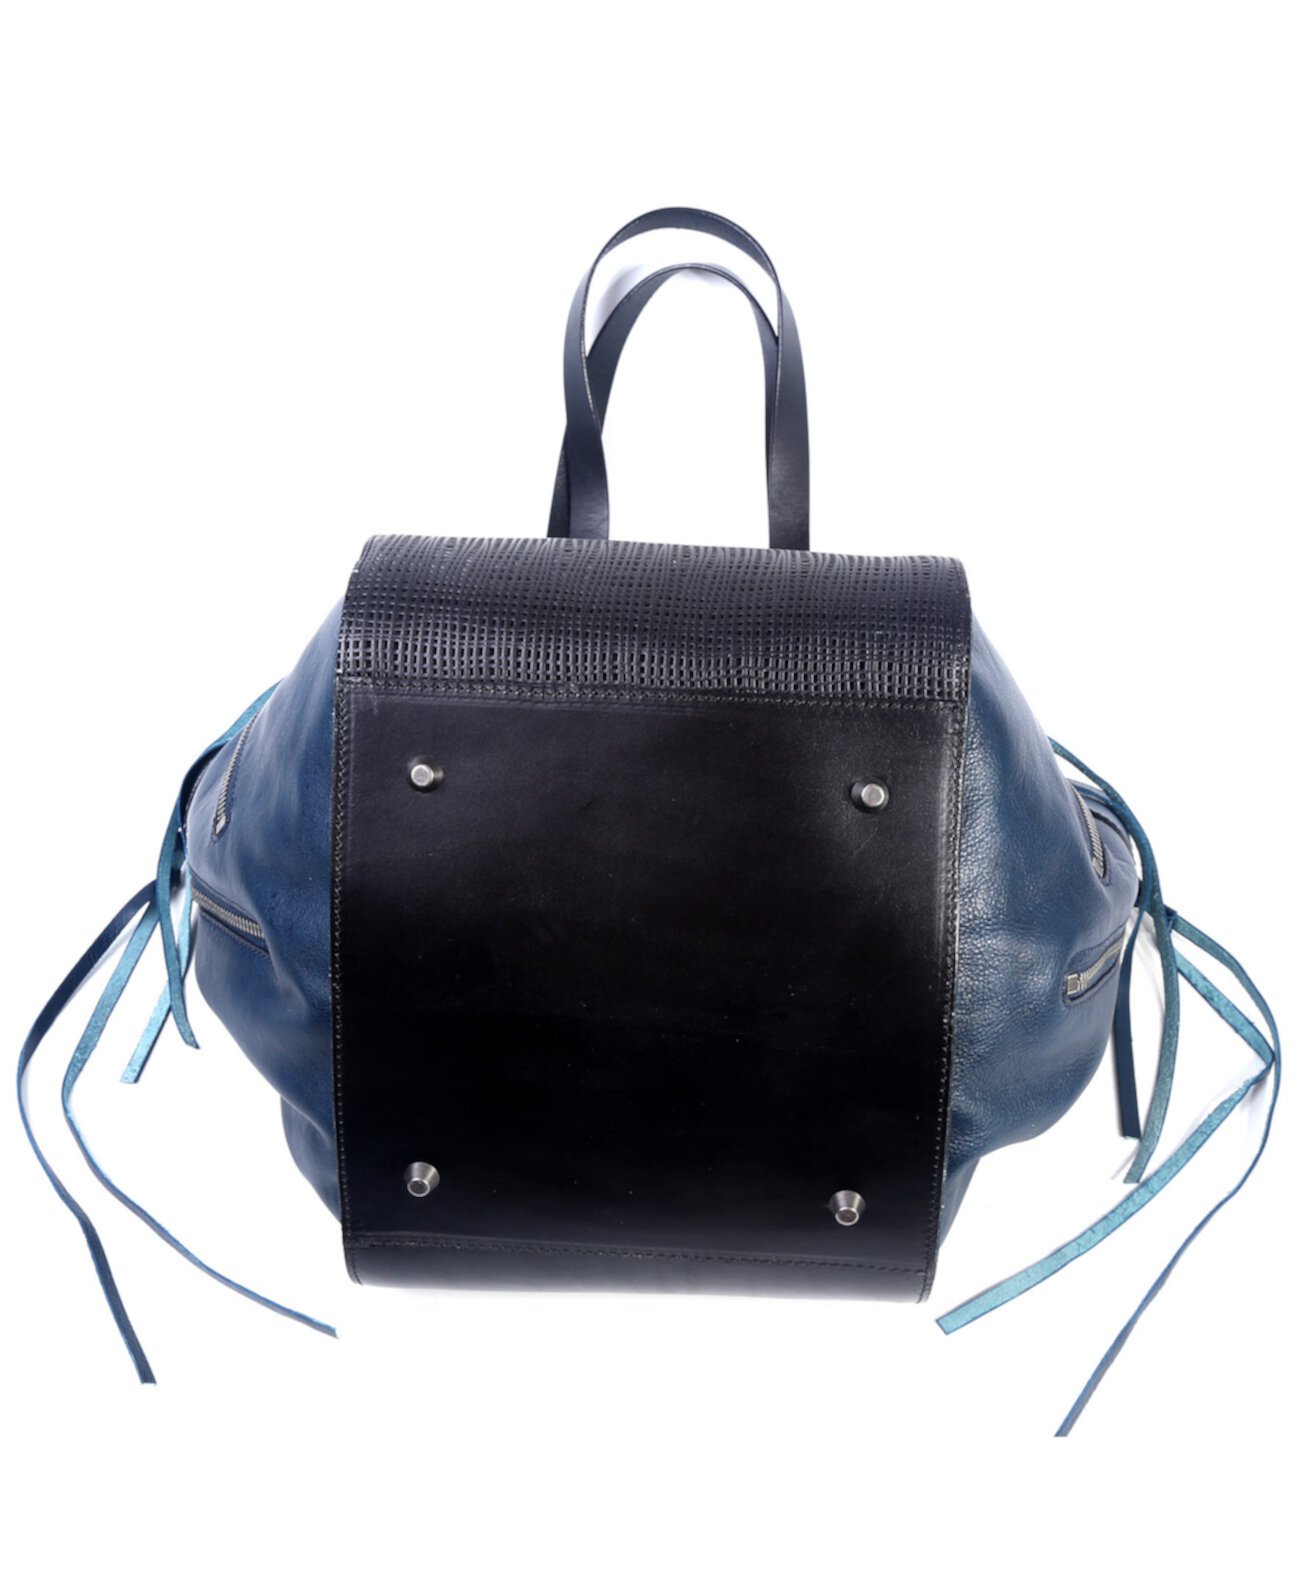 Кожаная сумка-тоут в практичном стиле Old Trend